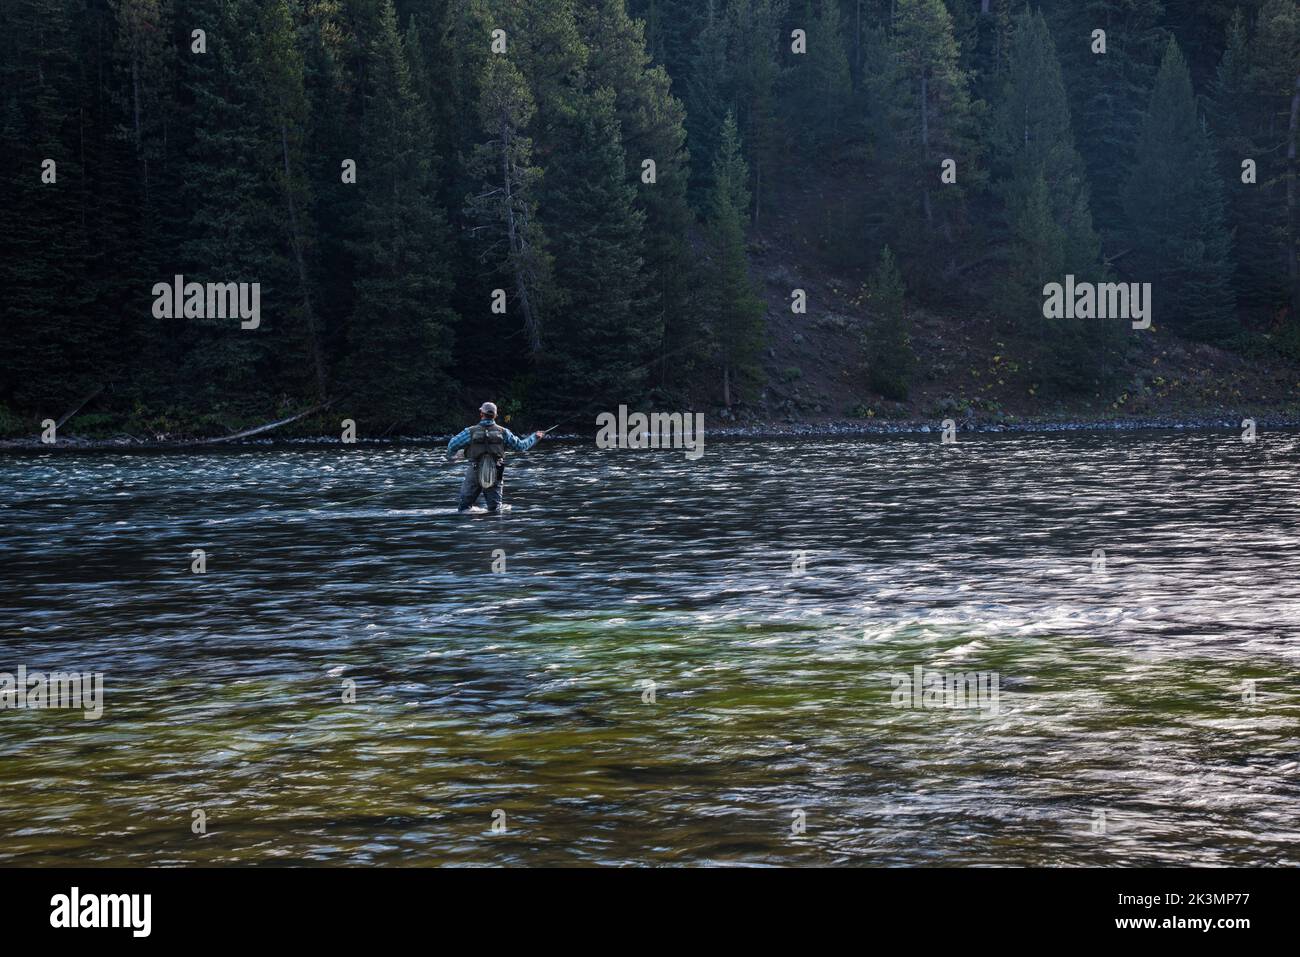 El sutil movimiento de un pescador con mosca en el río Yellowstone. El movimiento silencioso y decidido del brazo y el cuerpo demuestran su experiencia. Foto de stock